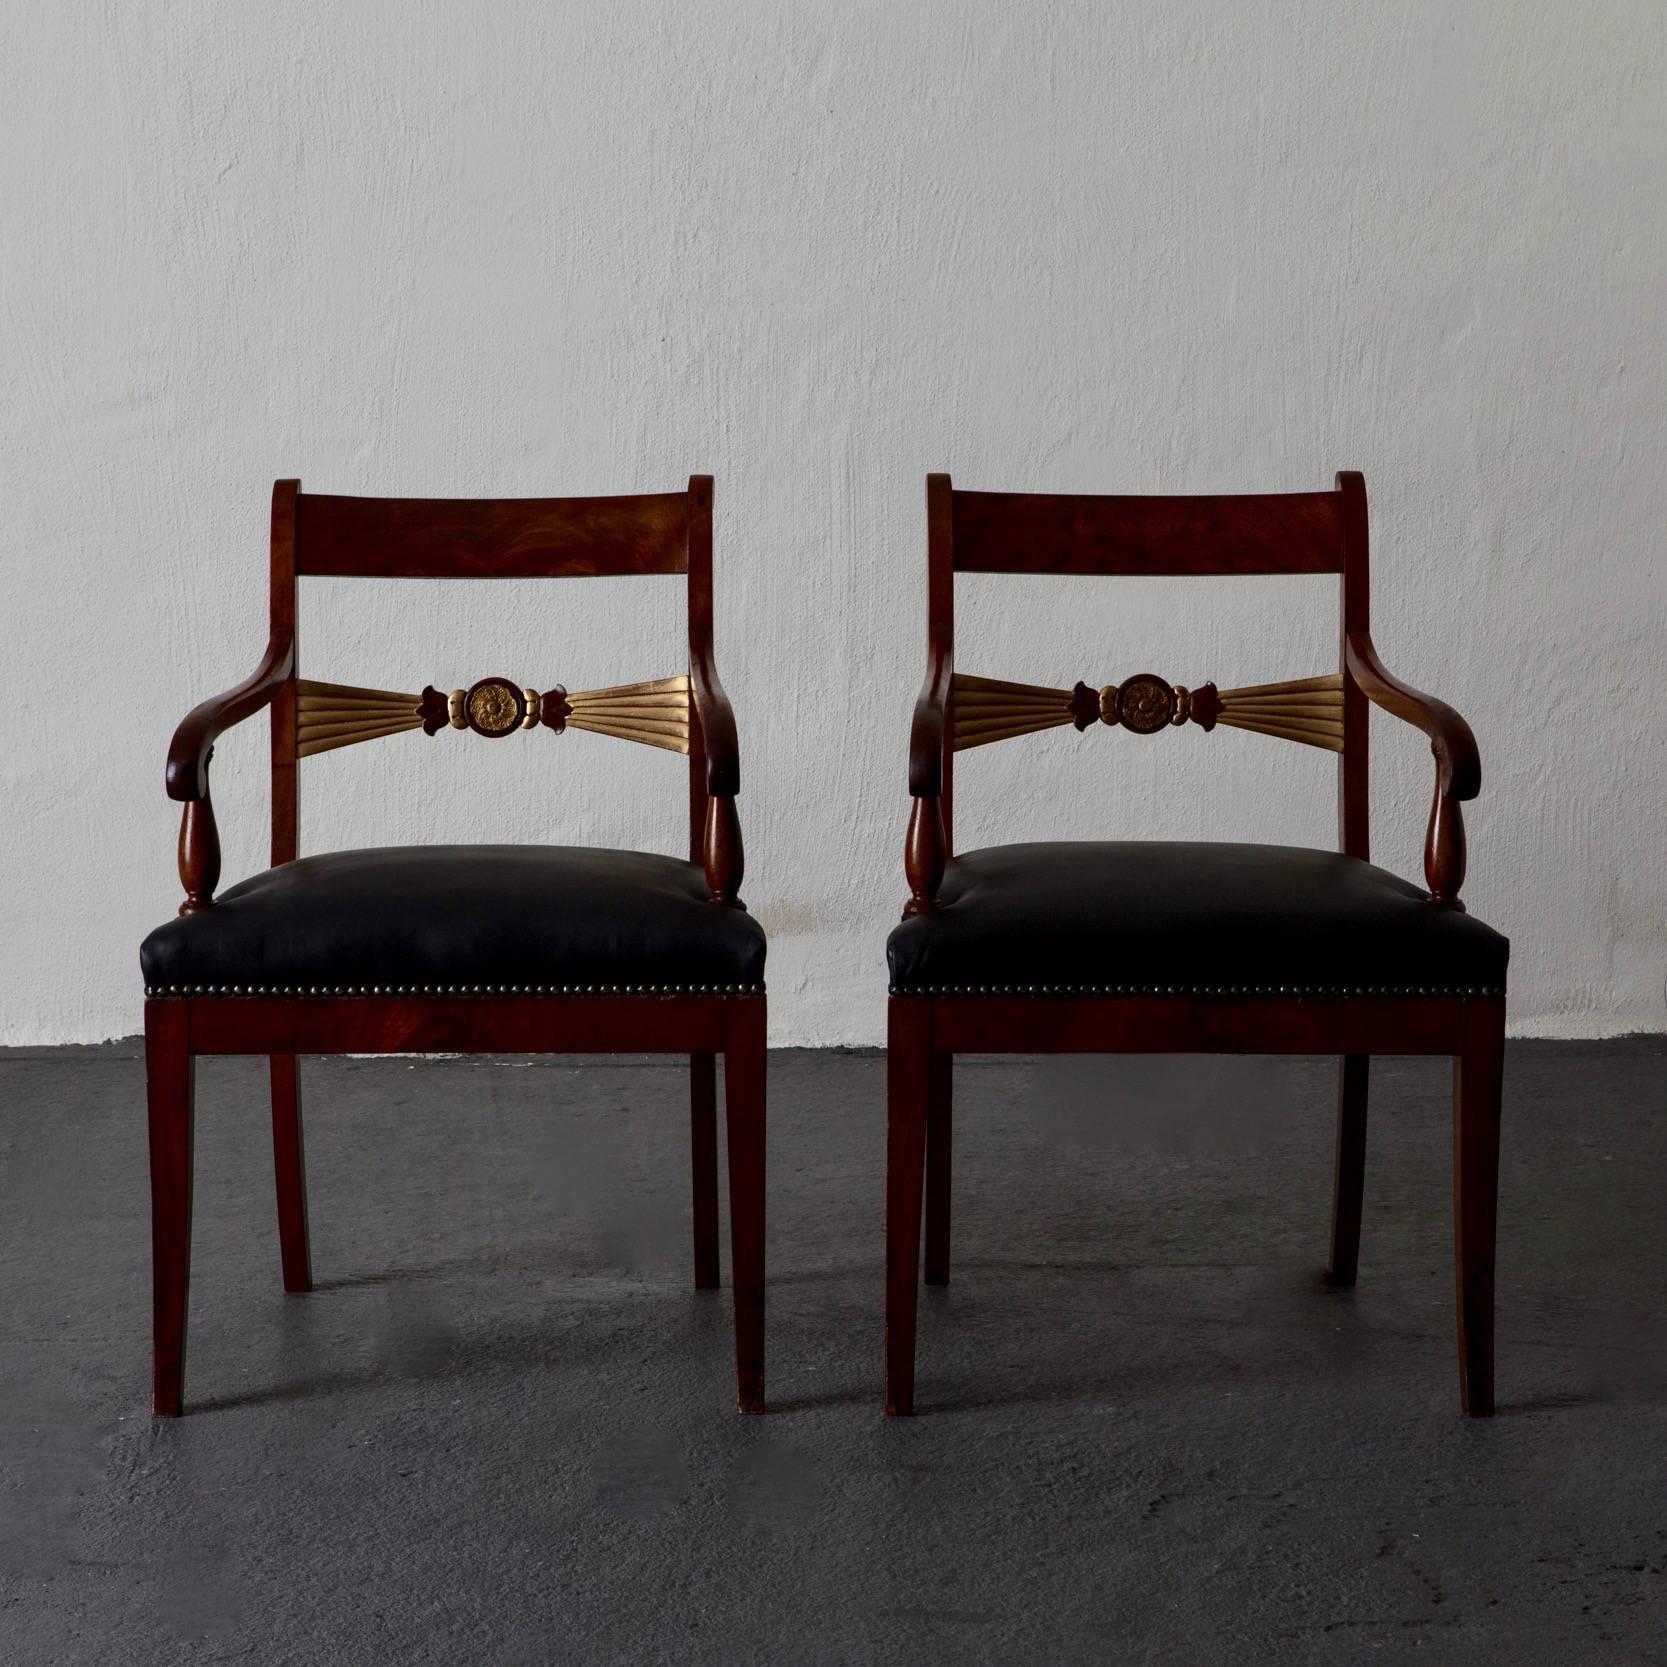 Paar Sessel aus Mahagoni mit vergoldeten Details 19. Jahrhundert schwarzes Leder, England. Ein Paar Sessel, hergestellt in England während der Regency-Periode im 19. Jahrhundert. Rahmen aus Mahagoniholz mit vergoldeten Details. Gepolstert mit